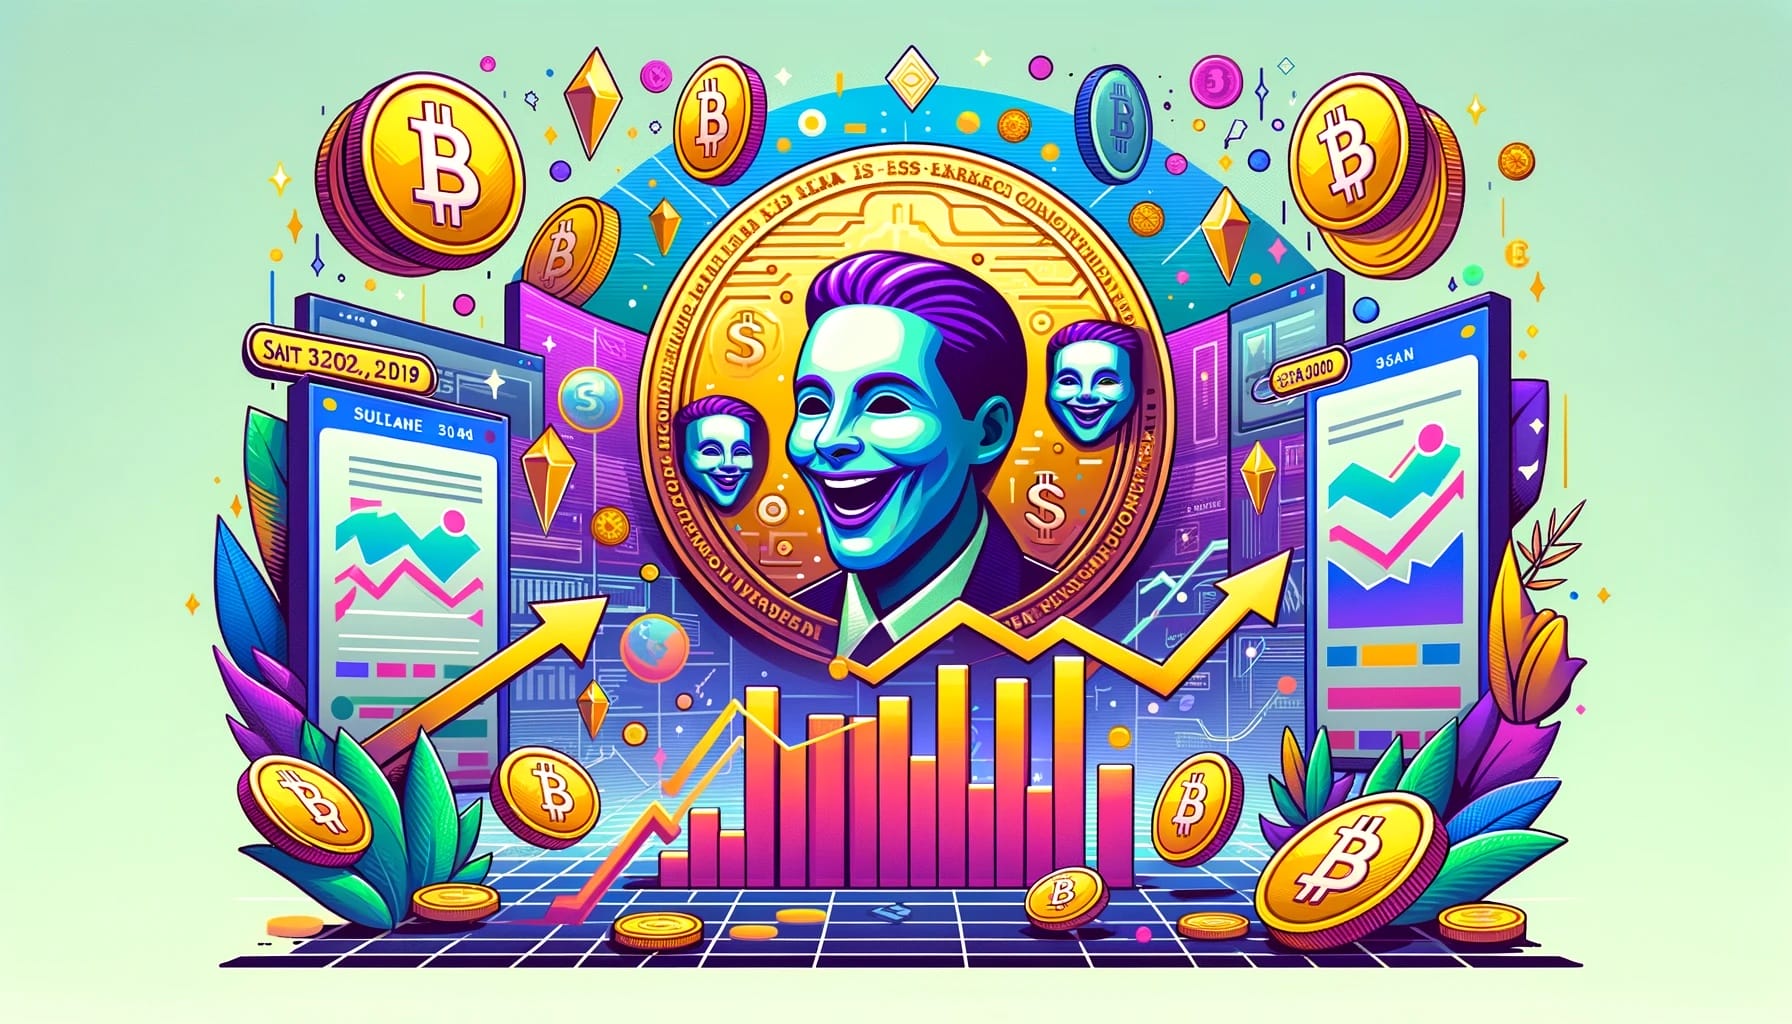 Meme coins da Solana registram grande demanda – Novos tokens com temas de celebridade se destacam